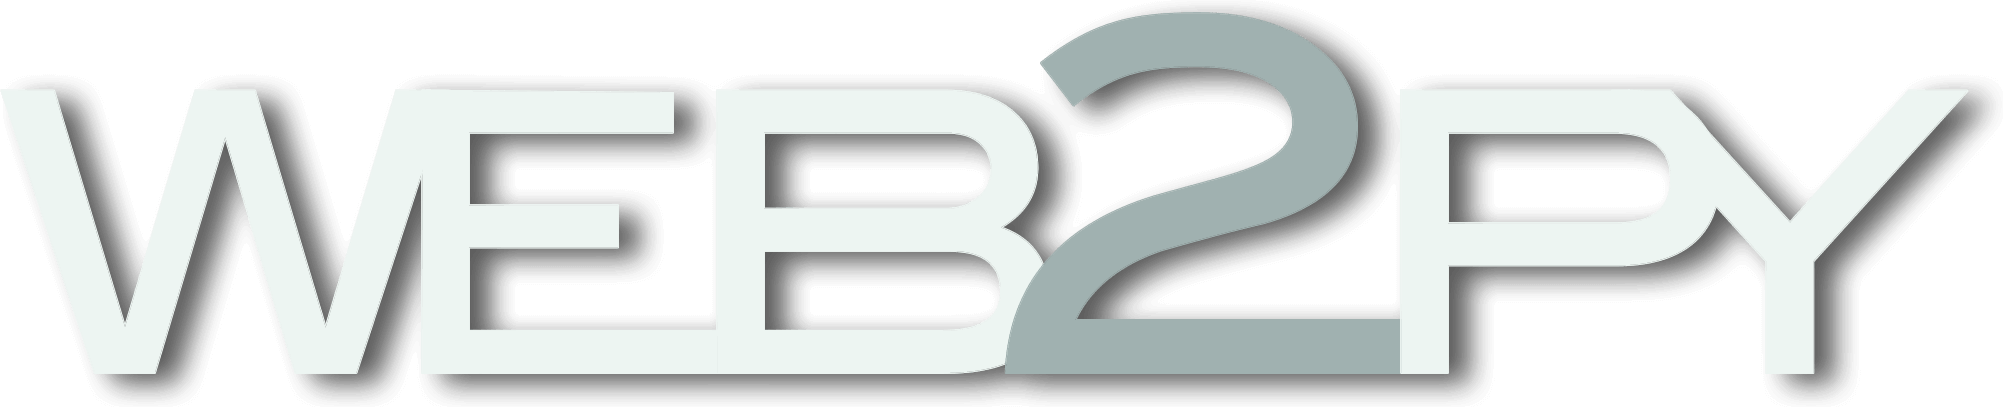 Web2py Logo